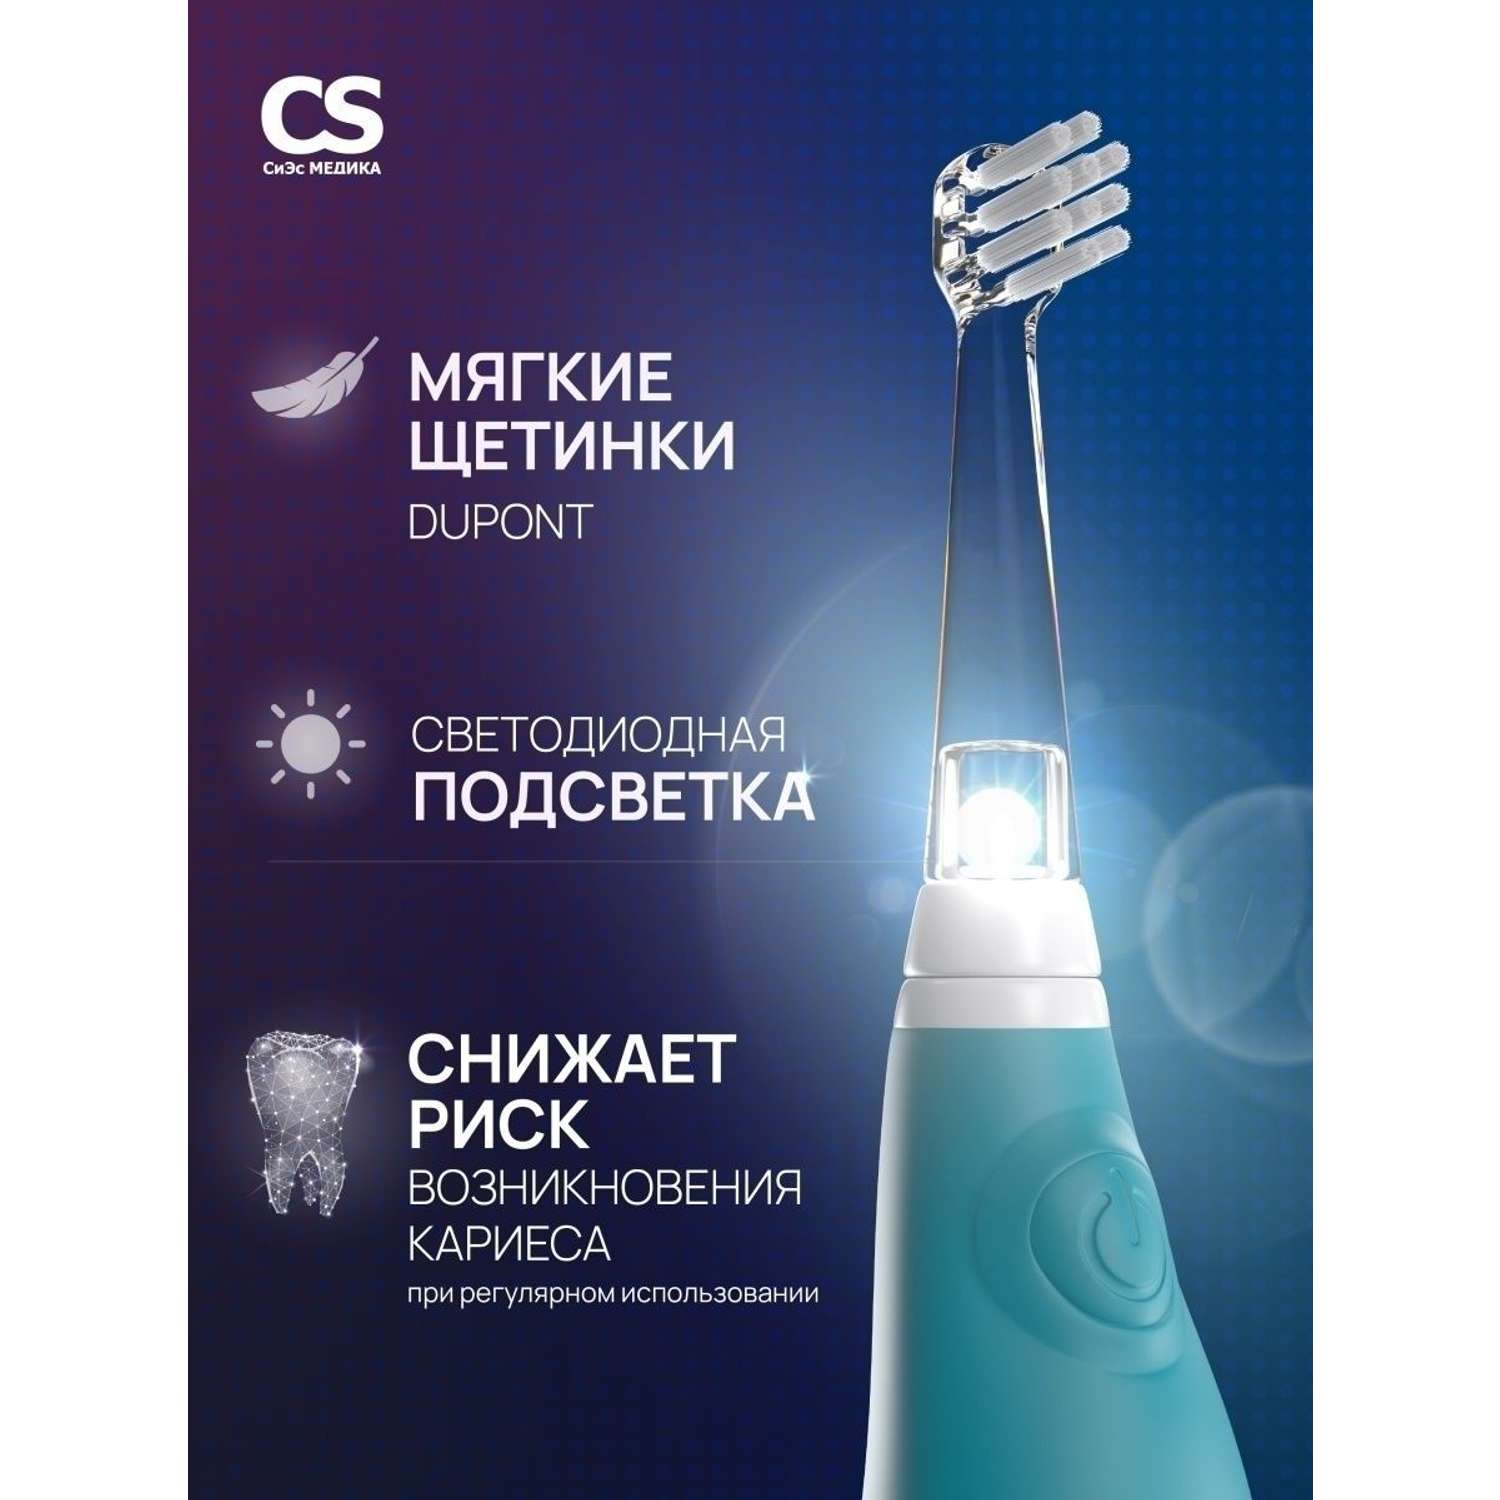 Электрическая зубная щетка CS MEDICA CS-561 Kids голубая - фото 3